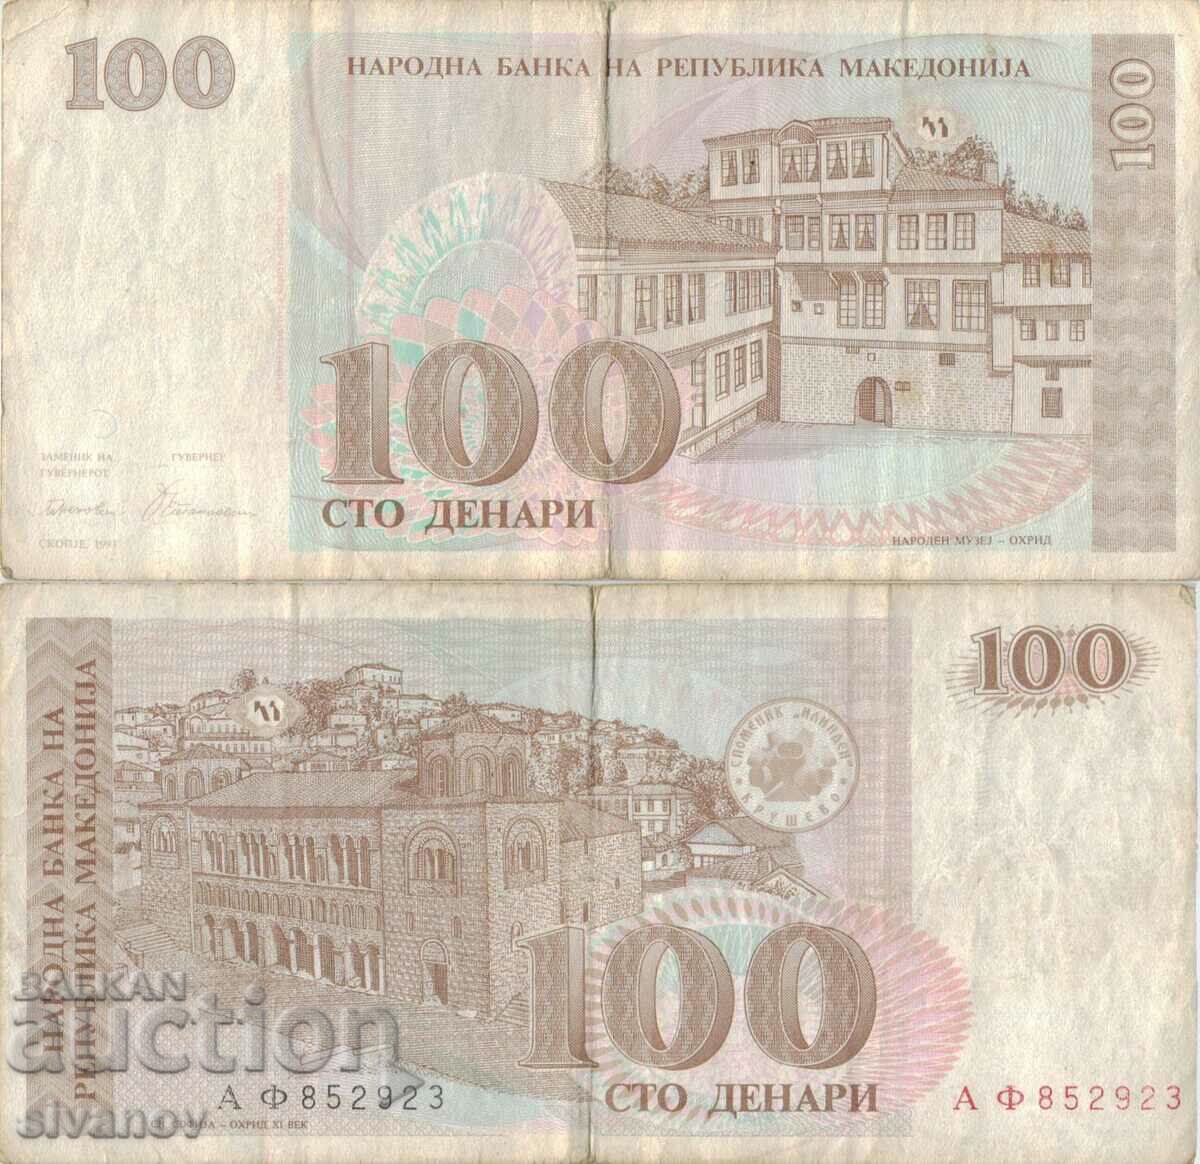 Macedonia 100 denari 1993 bancnota #5221